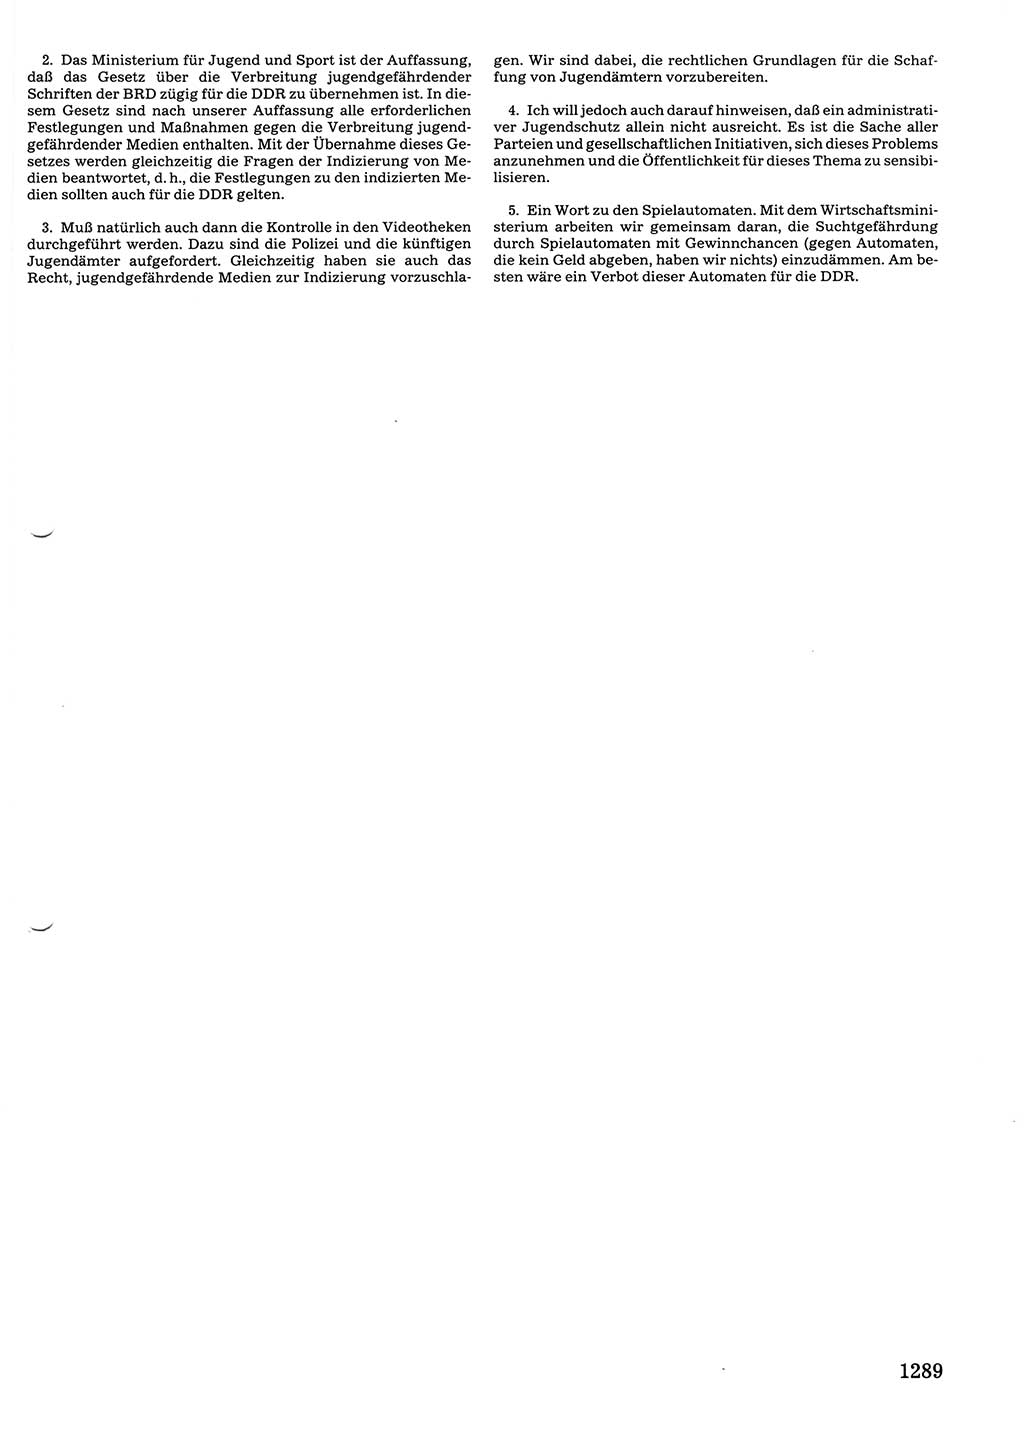 Tagungen der Volkskammer (VK) der Deutschen Demokratischen Republik (DDR), 10. Wahlperiode 1990, Seite 1289 (VK. DDR 10. WP. 1990, Prot. Tg. 1-38, 5.4.-2.10.1990, S. 1289)